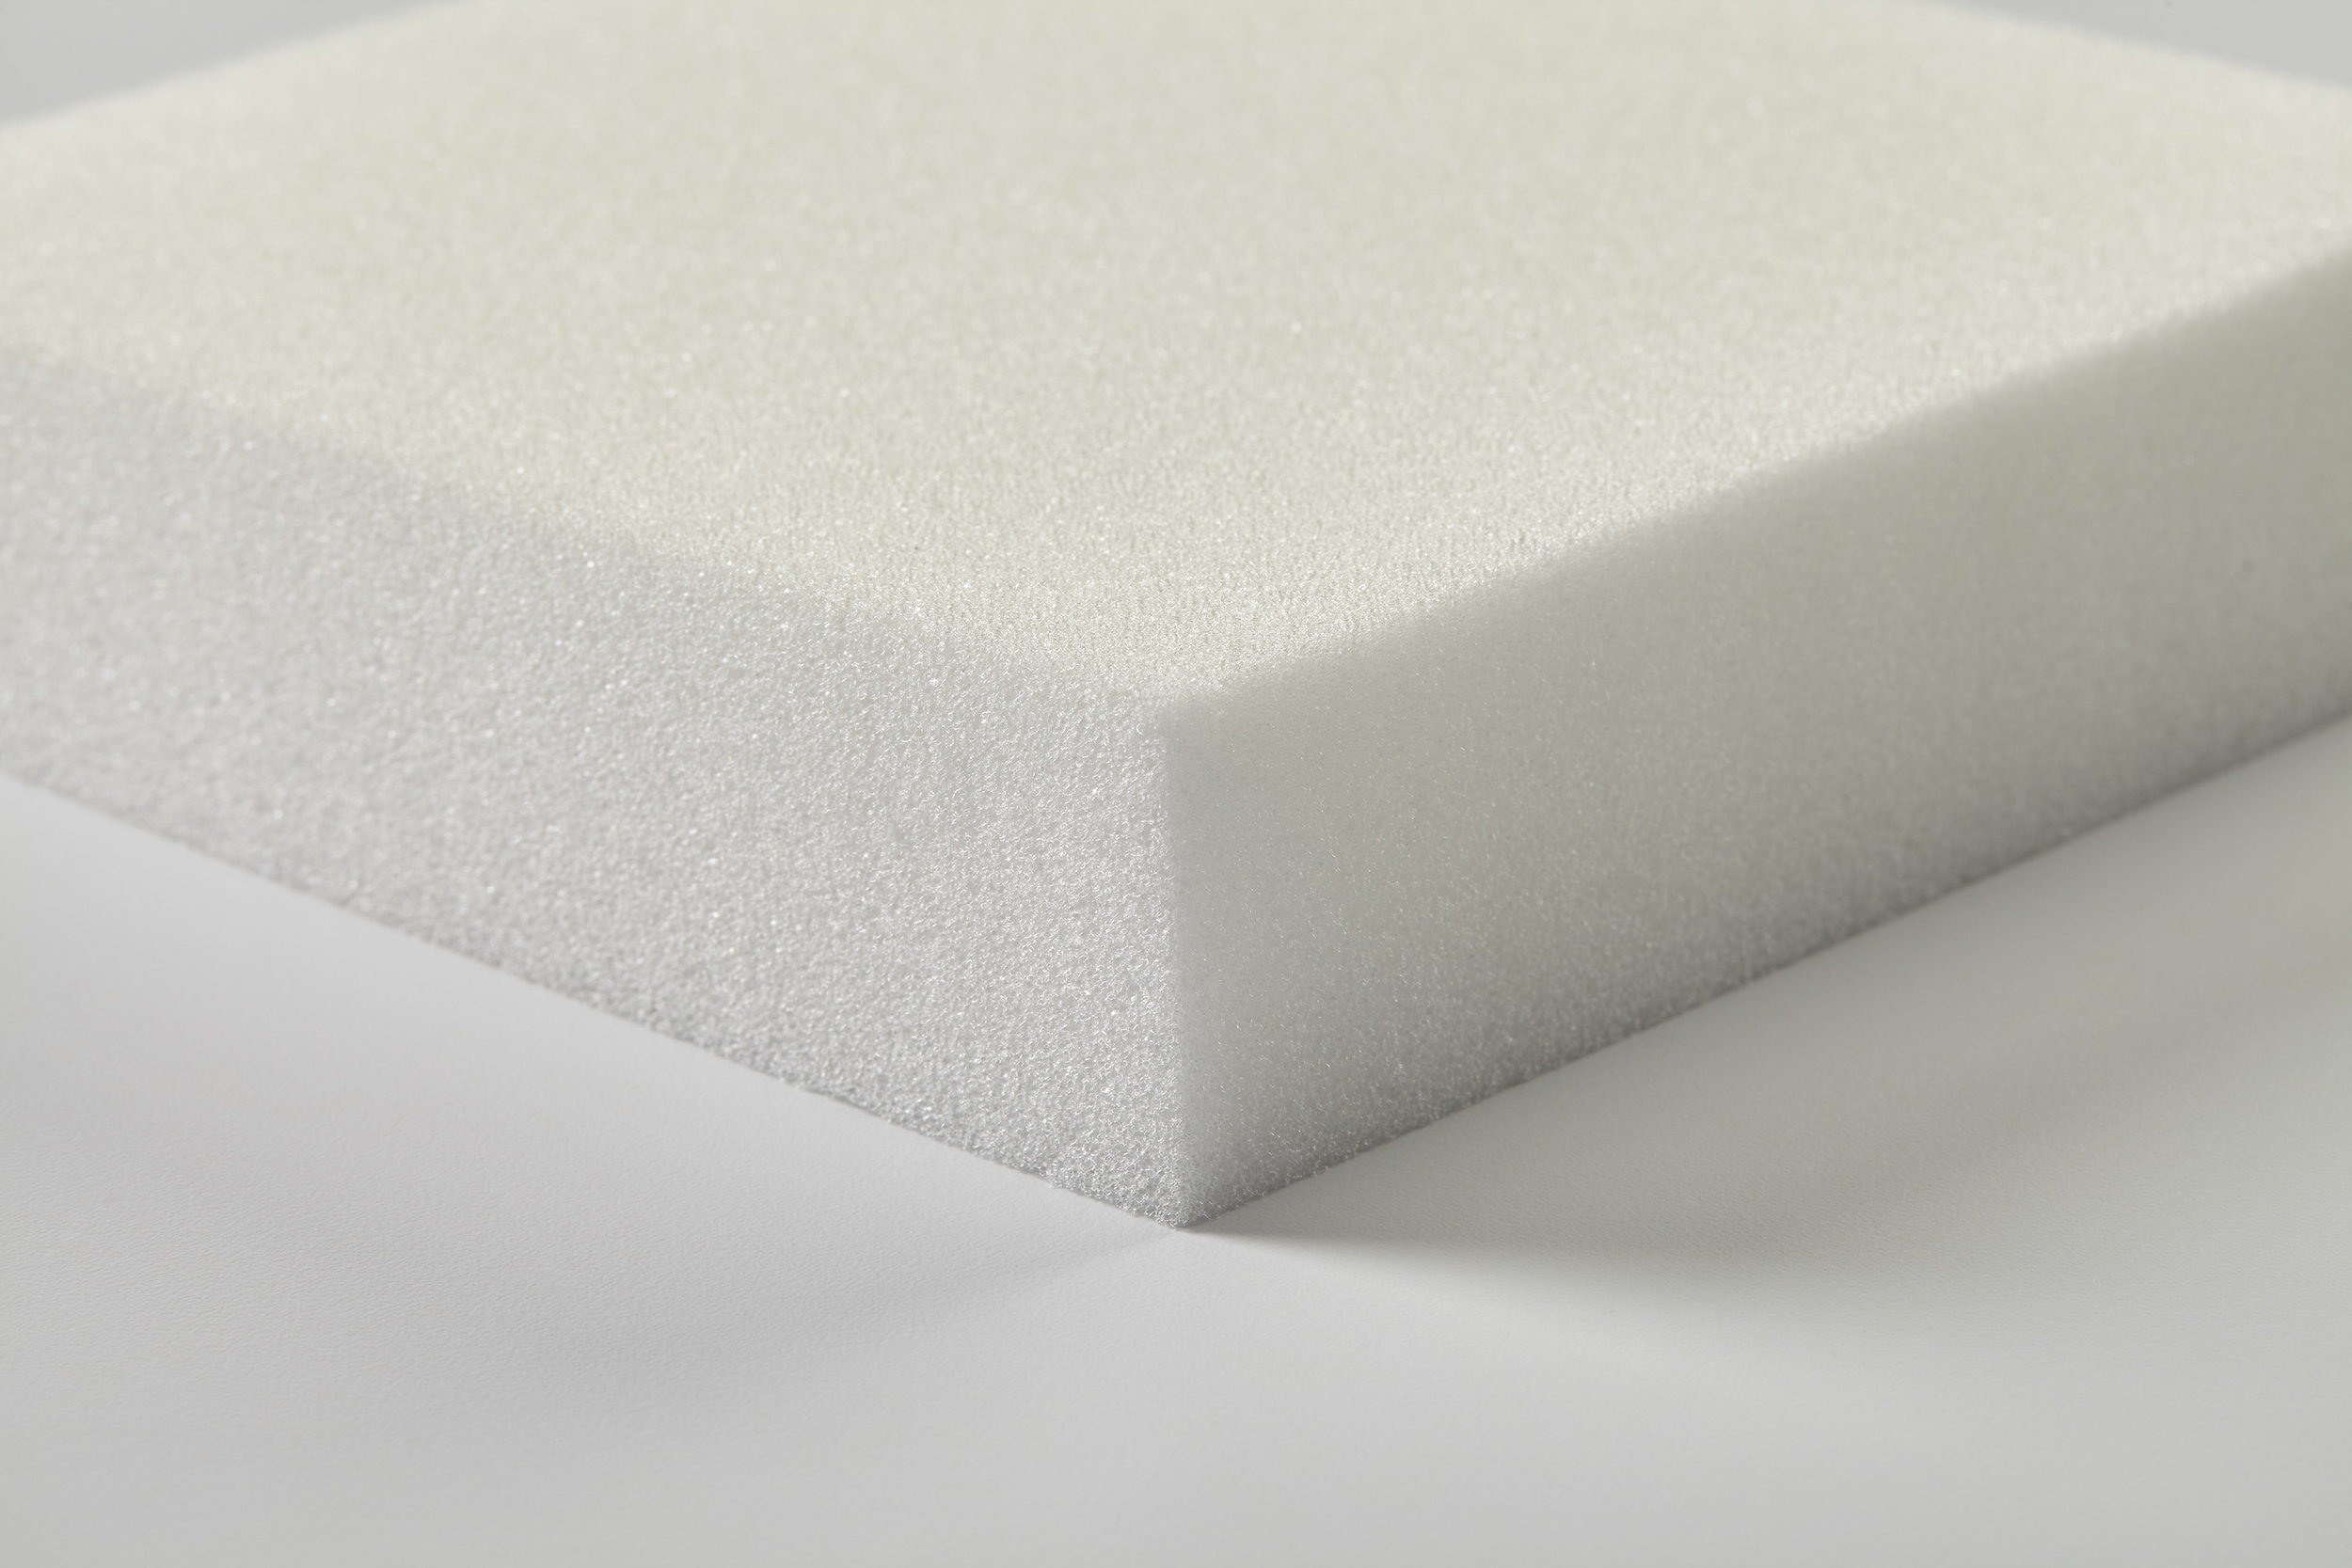 Seat Max - 1.8 LB density Upholstery Foam Sheets (Better) — Bestway Foam